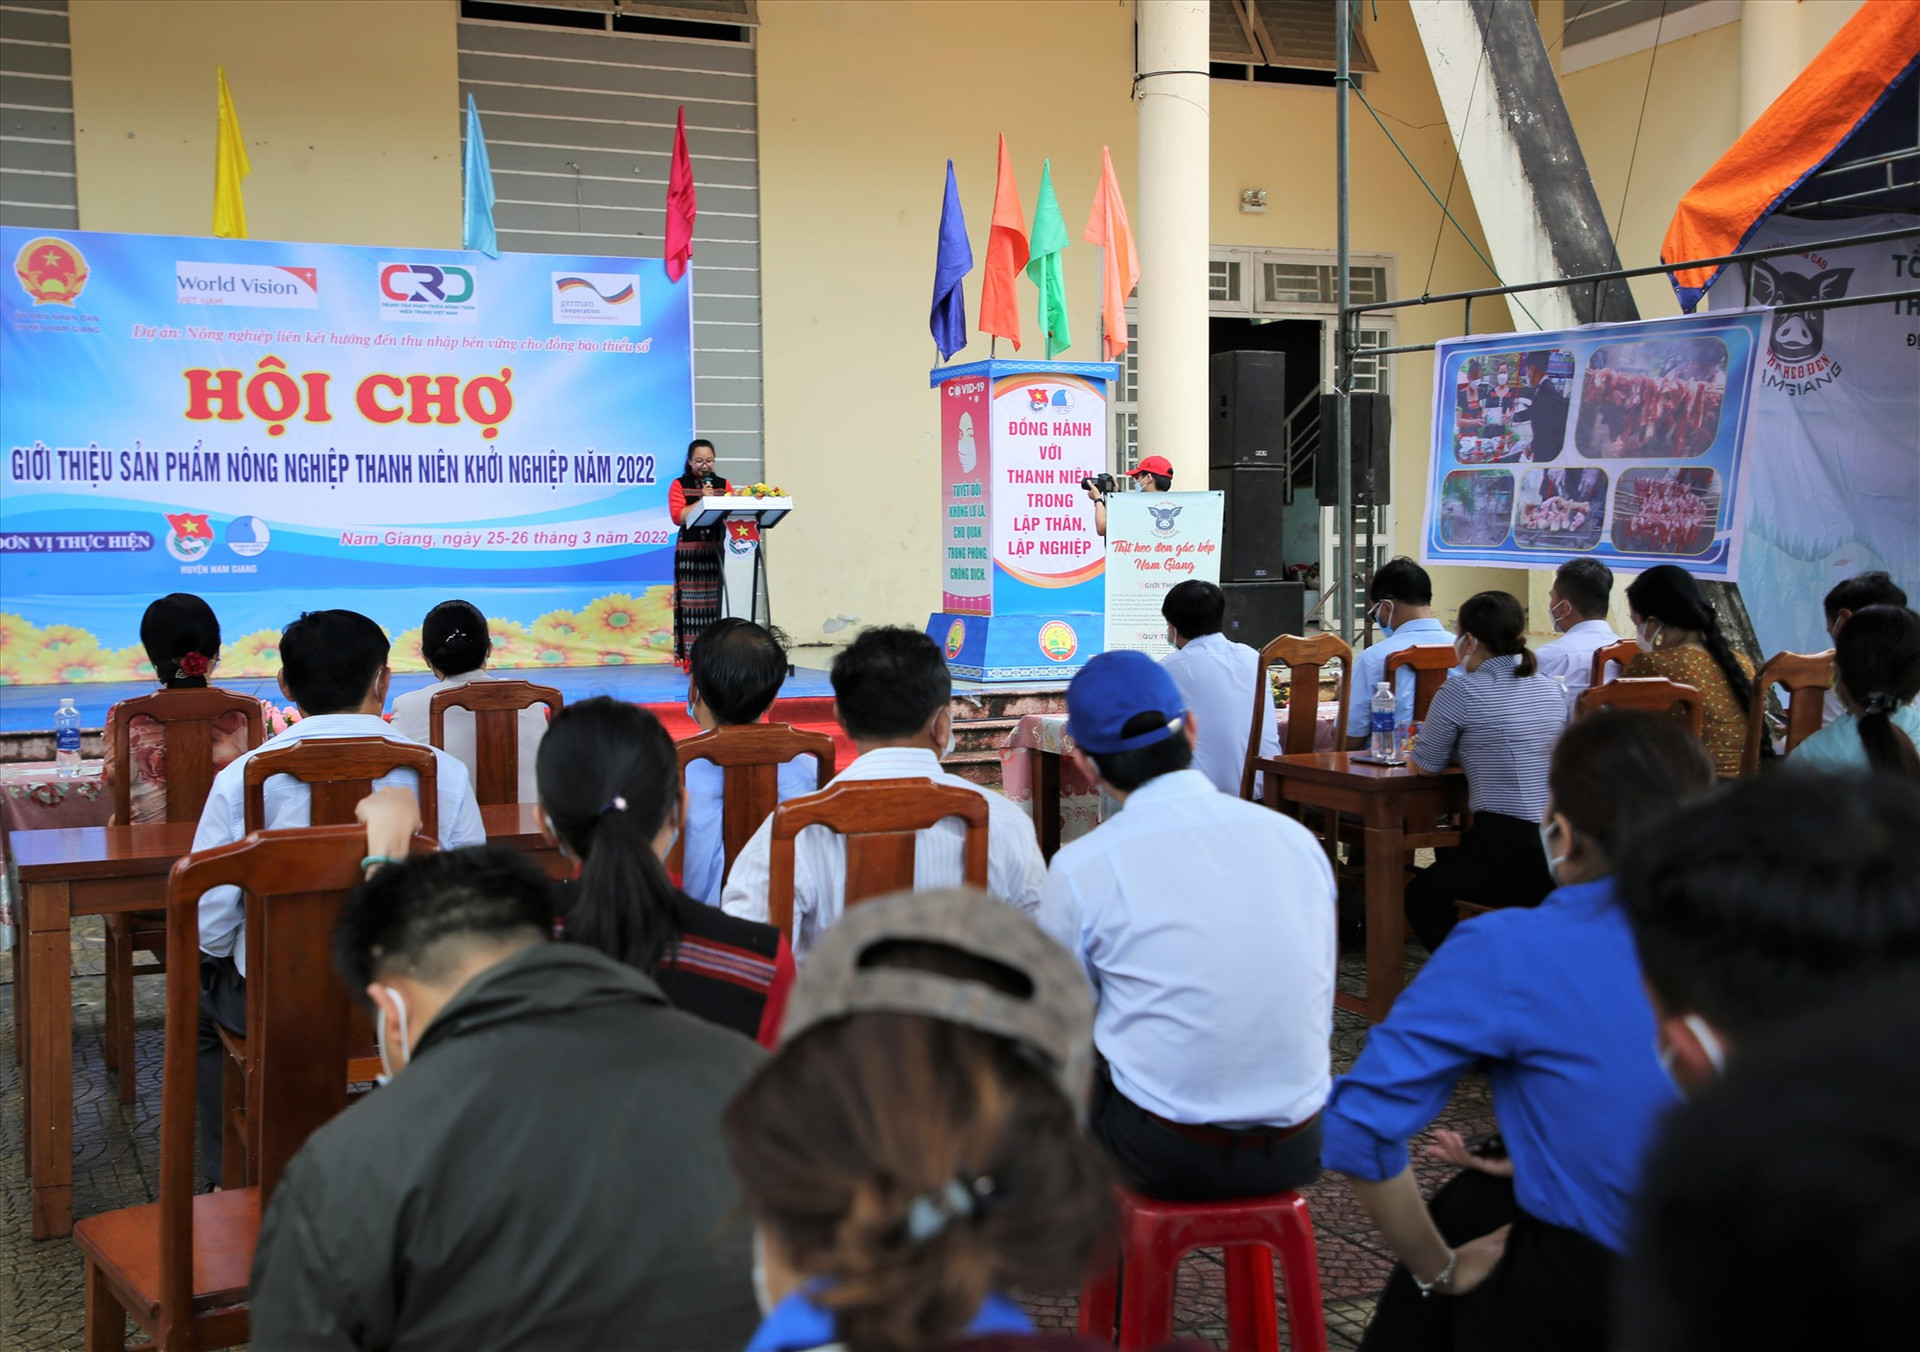 Hội chợ giới thiệu sản phẩm nông nghiệp thanh niên khởi nghiệp huyện Nam Giang nhằm chào mừng 91 năm Ngày thành lập Đoàn TNCS Hồ Chí Minh 26.3. Ảnh: A,N